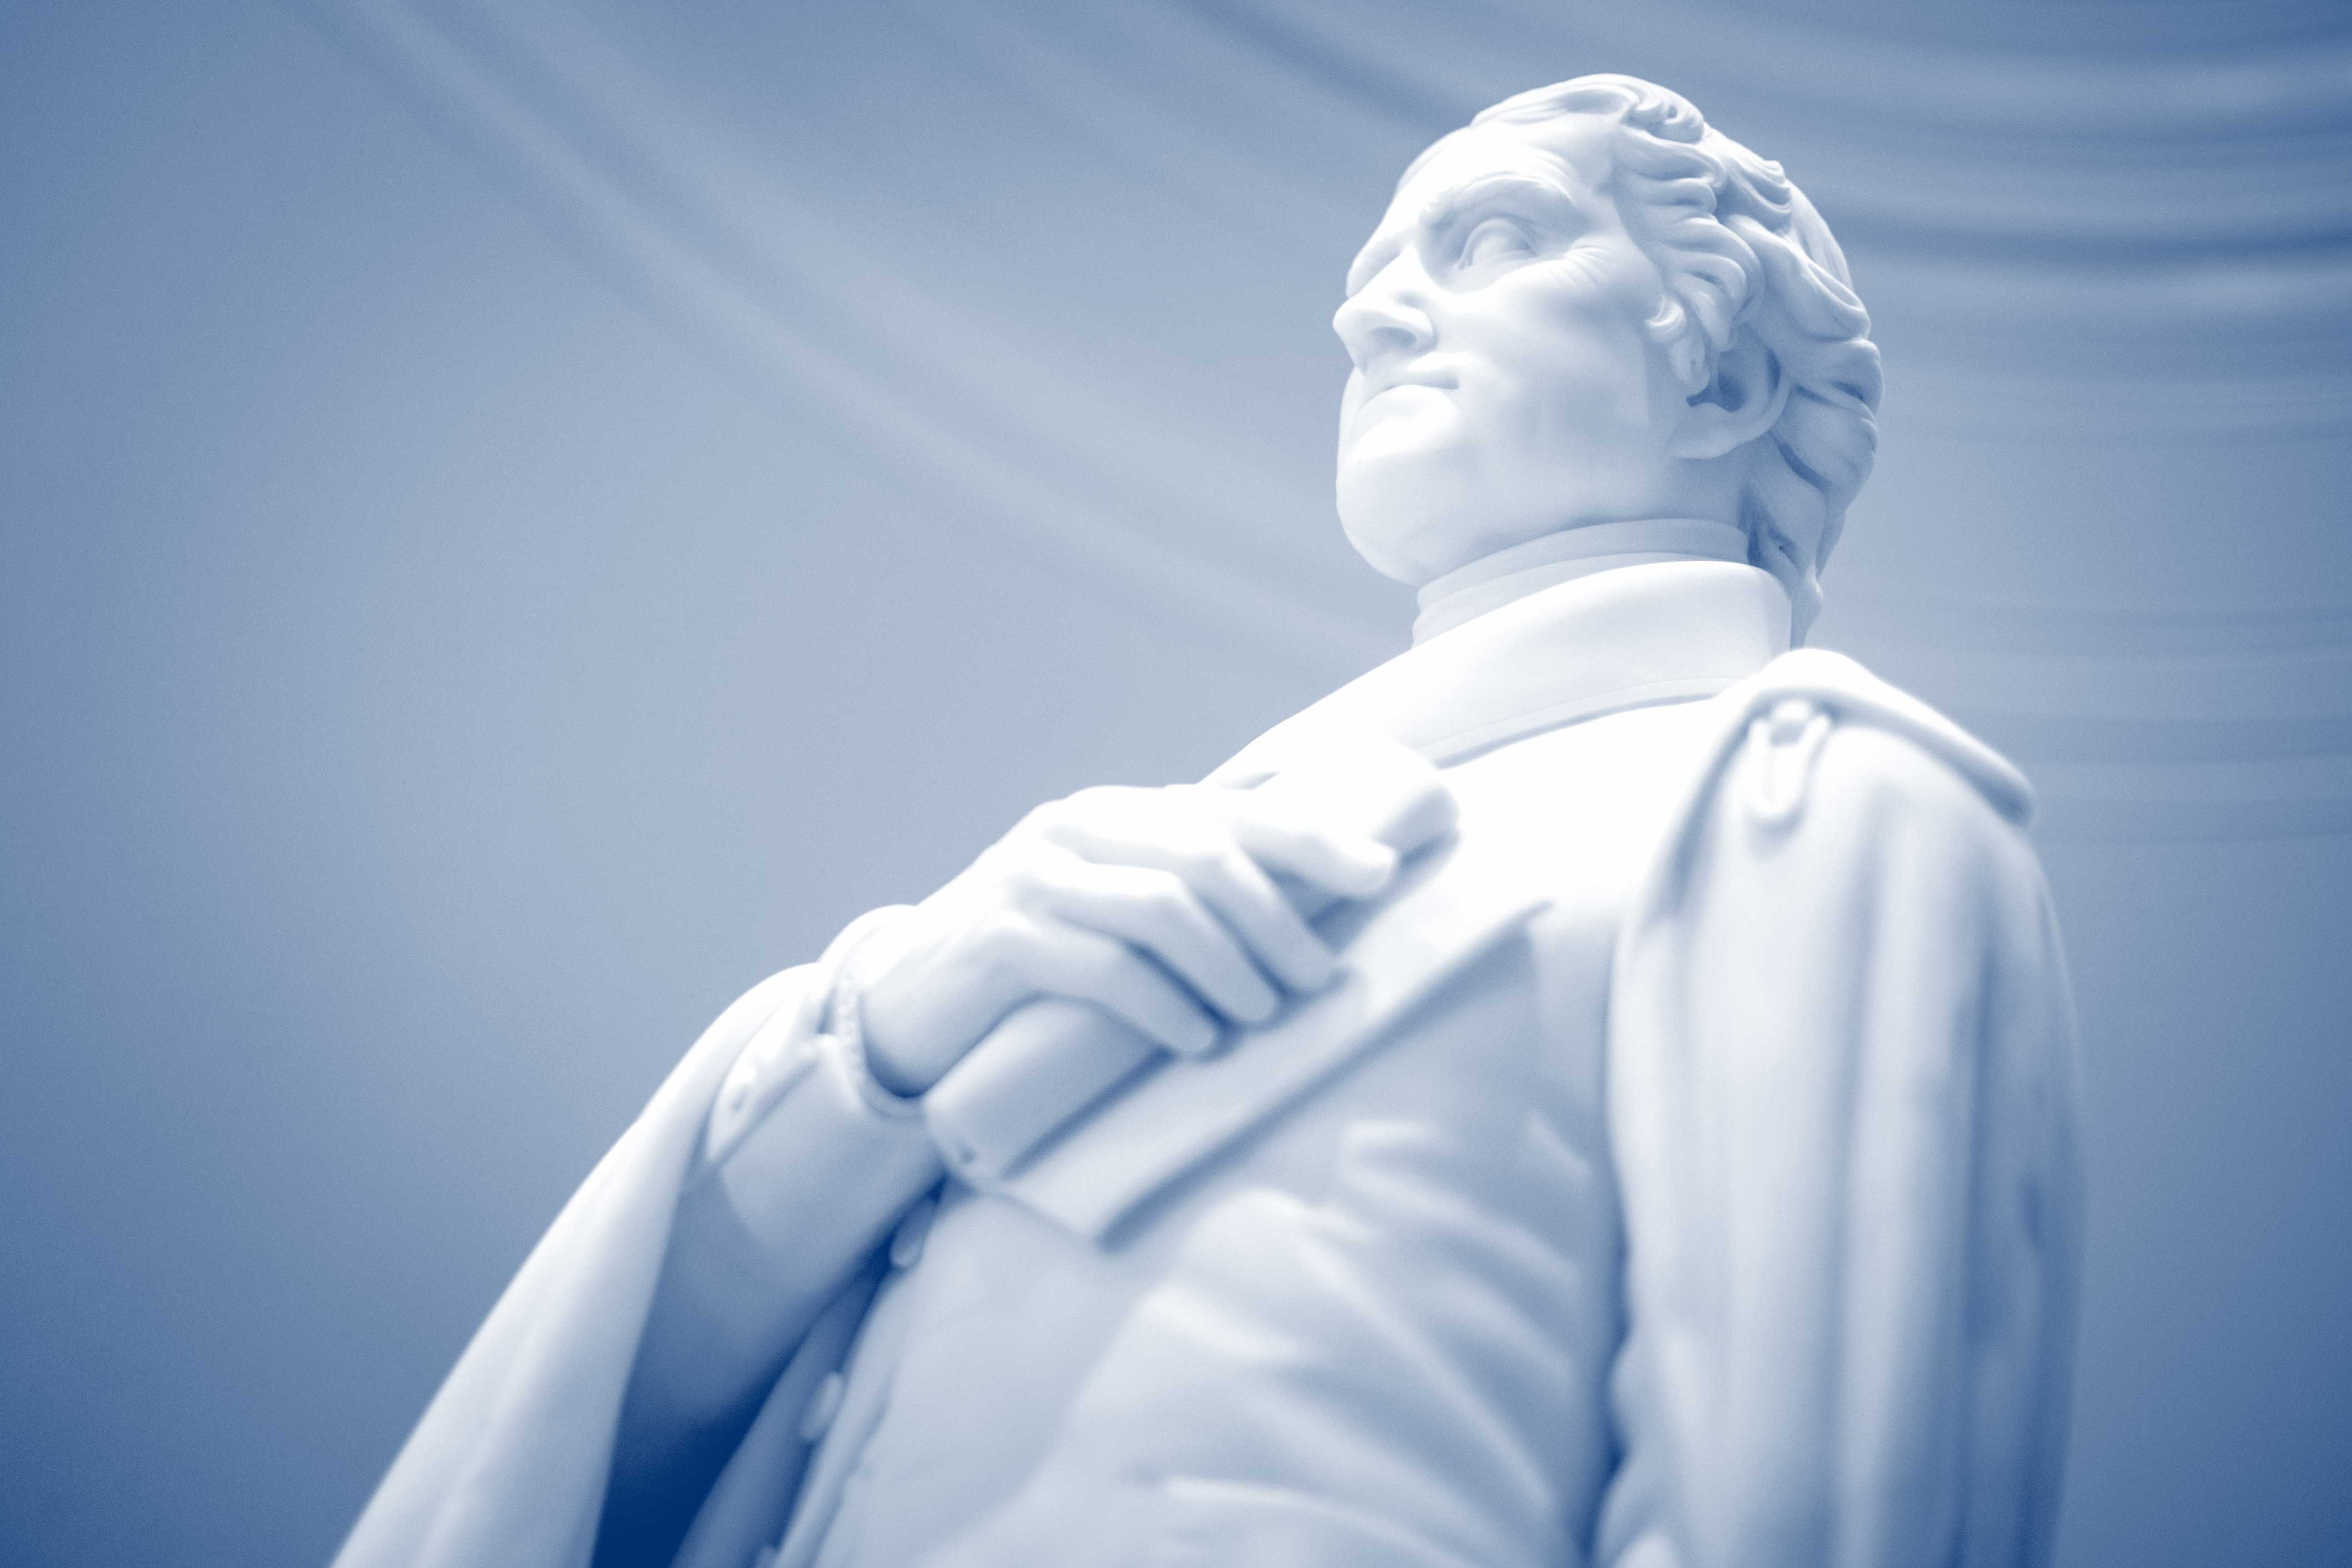 White Thomas Jefferson statue